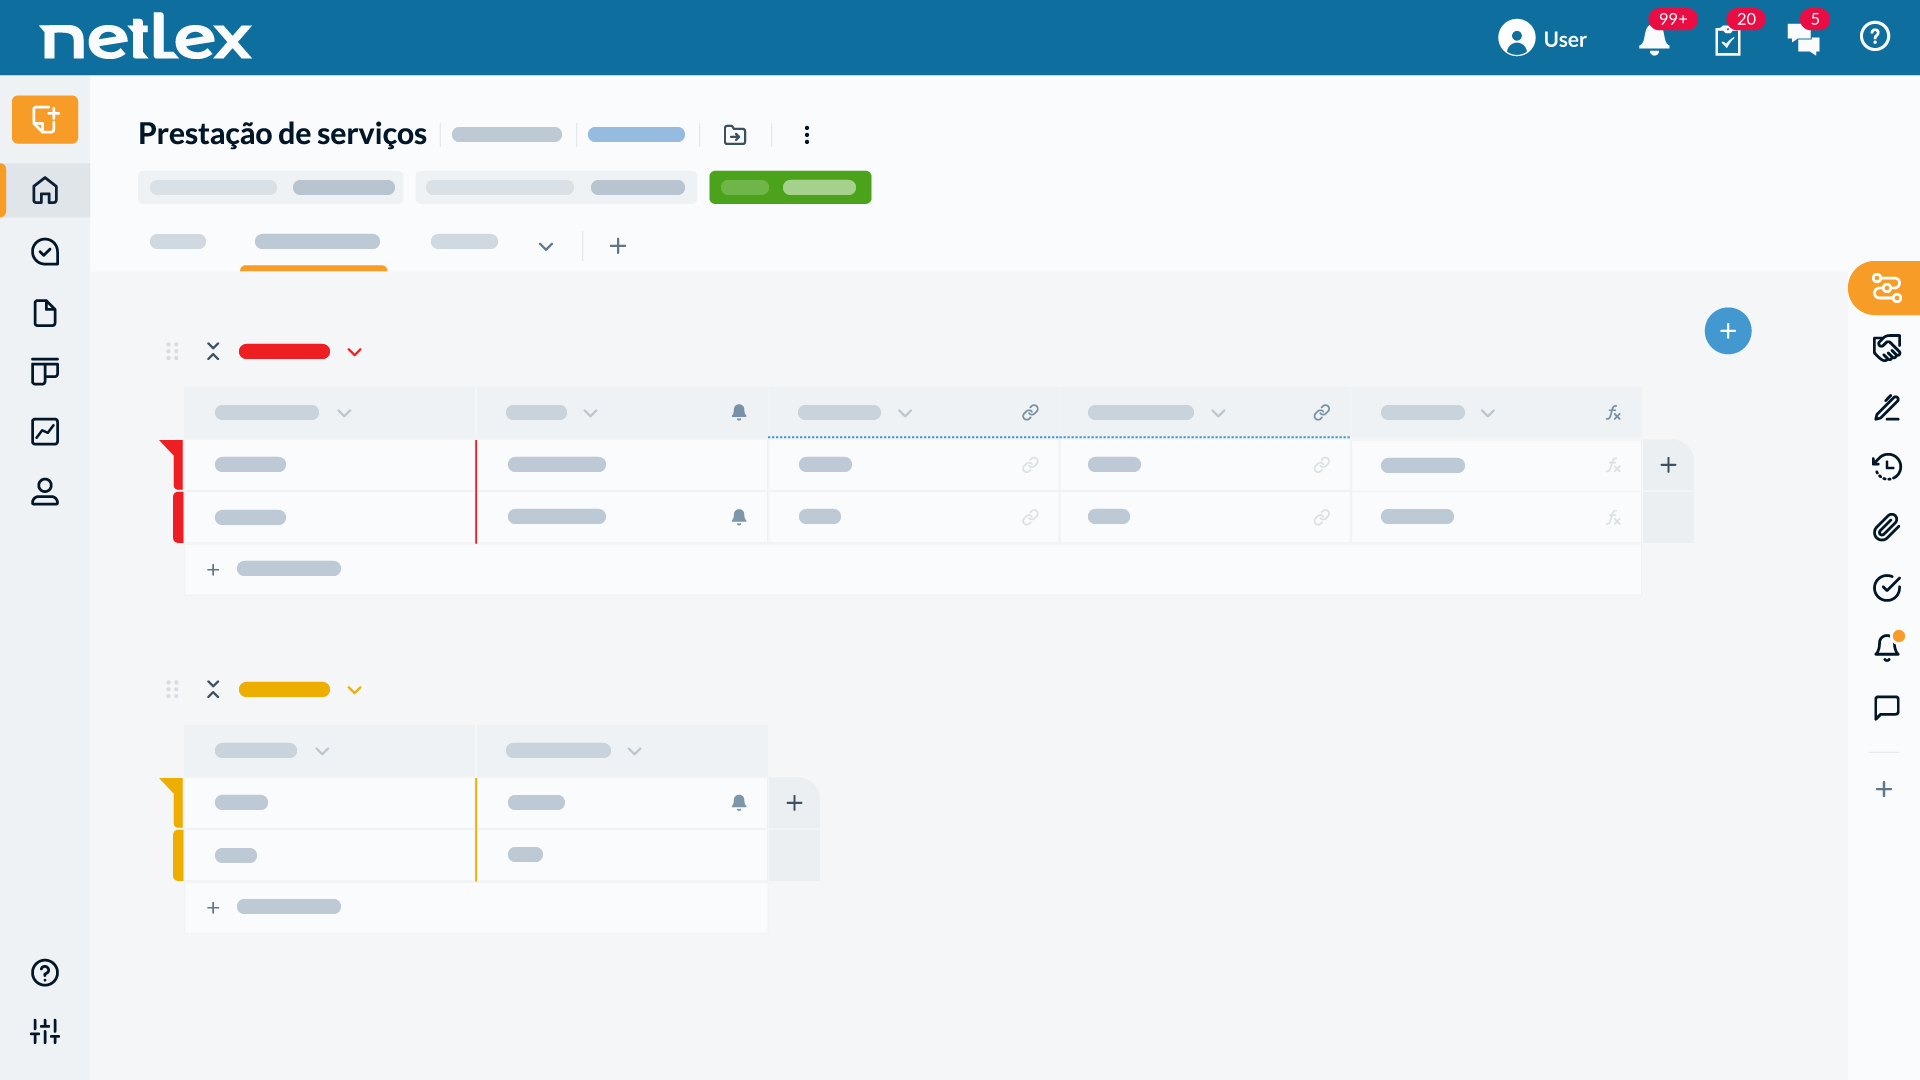 netLex Software - Visualize detalhes dos seus documentos em uma tela centralizada, fazendo a gestão dos prazos, da sua equipe e muito mais.